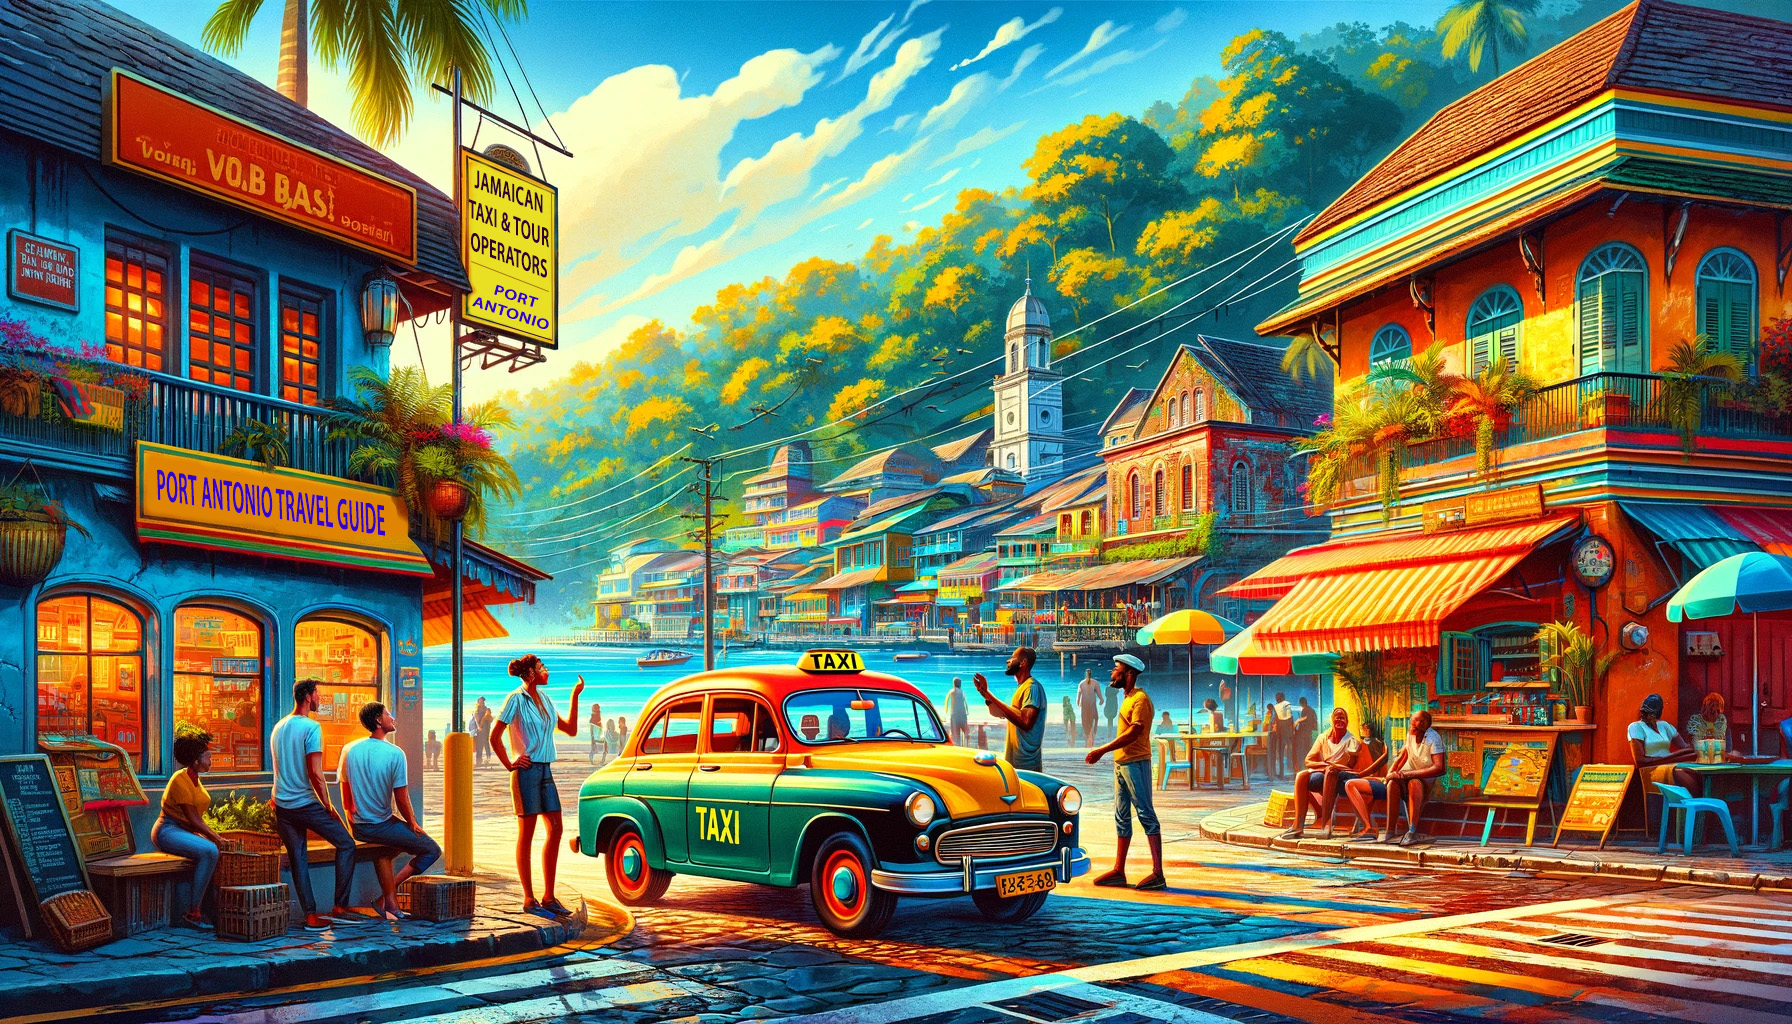 Jamaican Taxi & Tour Operators - Port Antonio Travel Guide